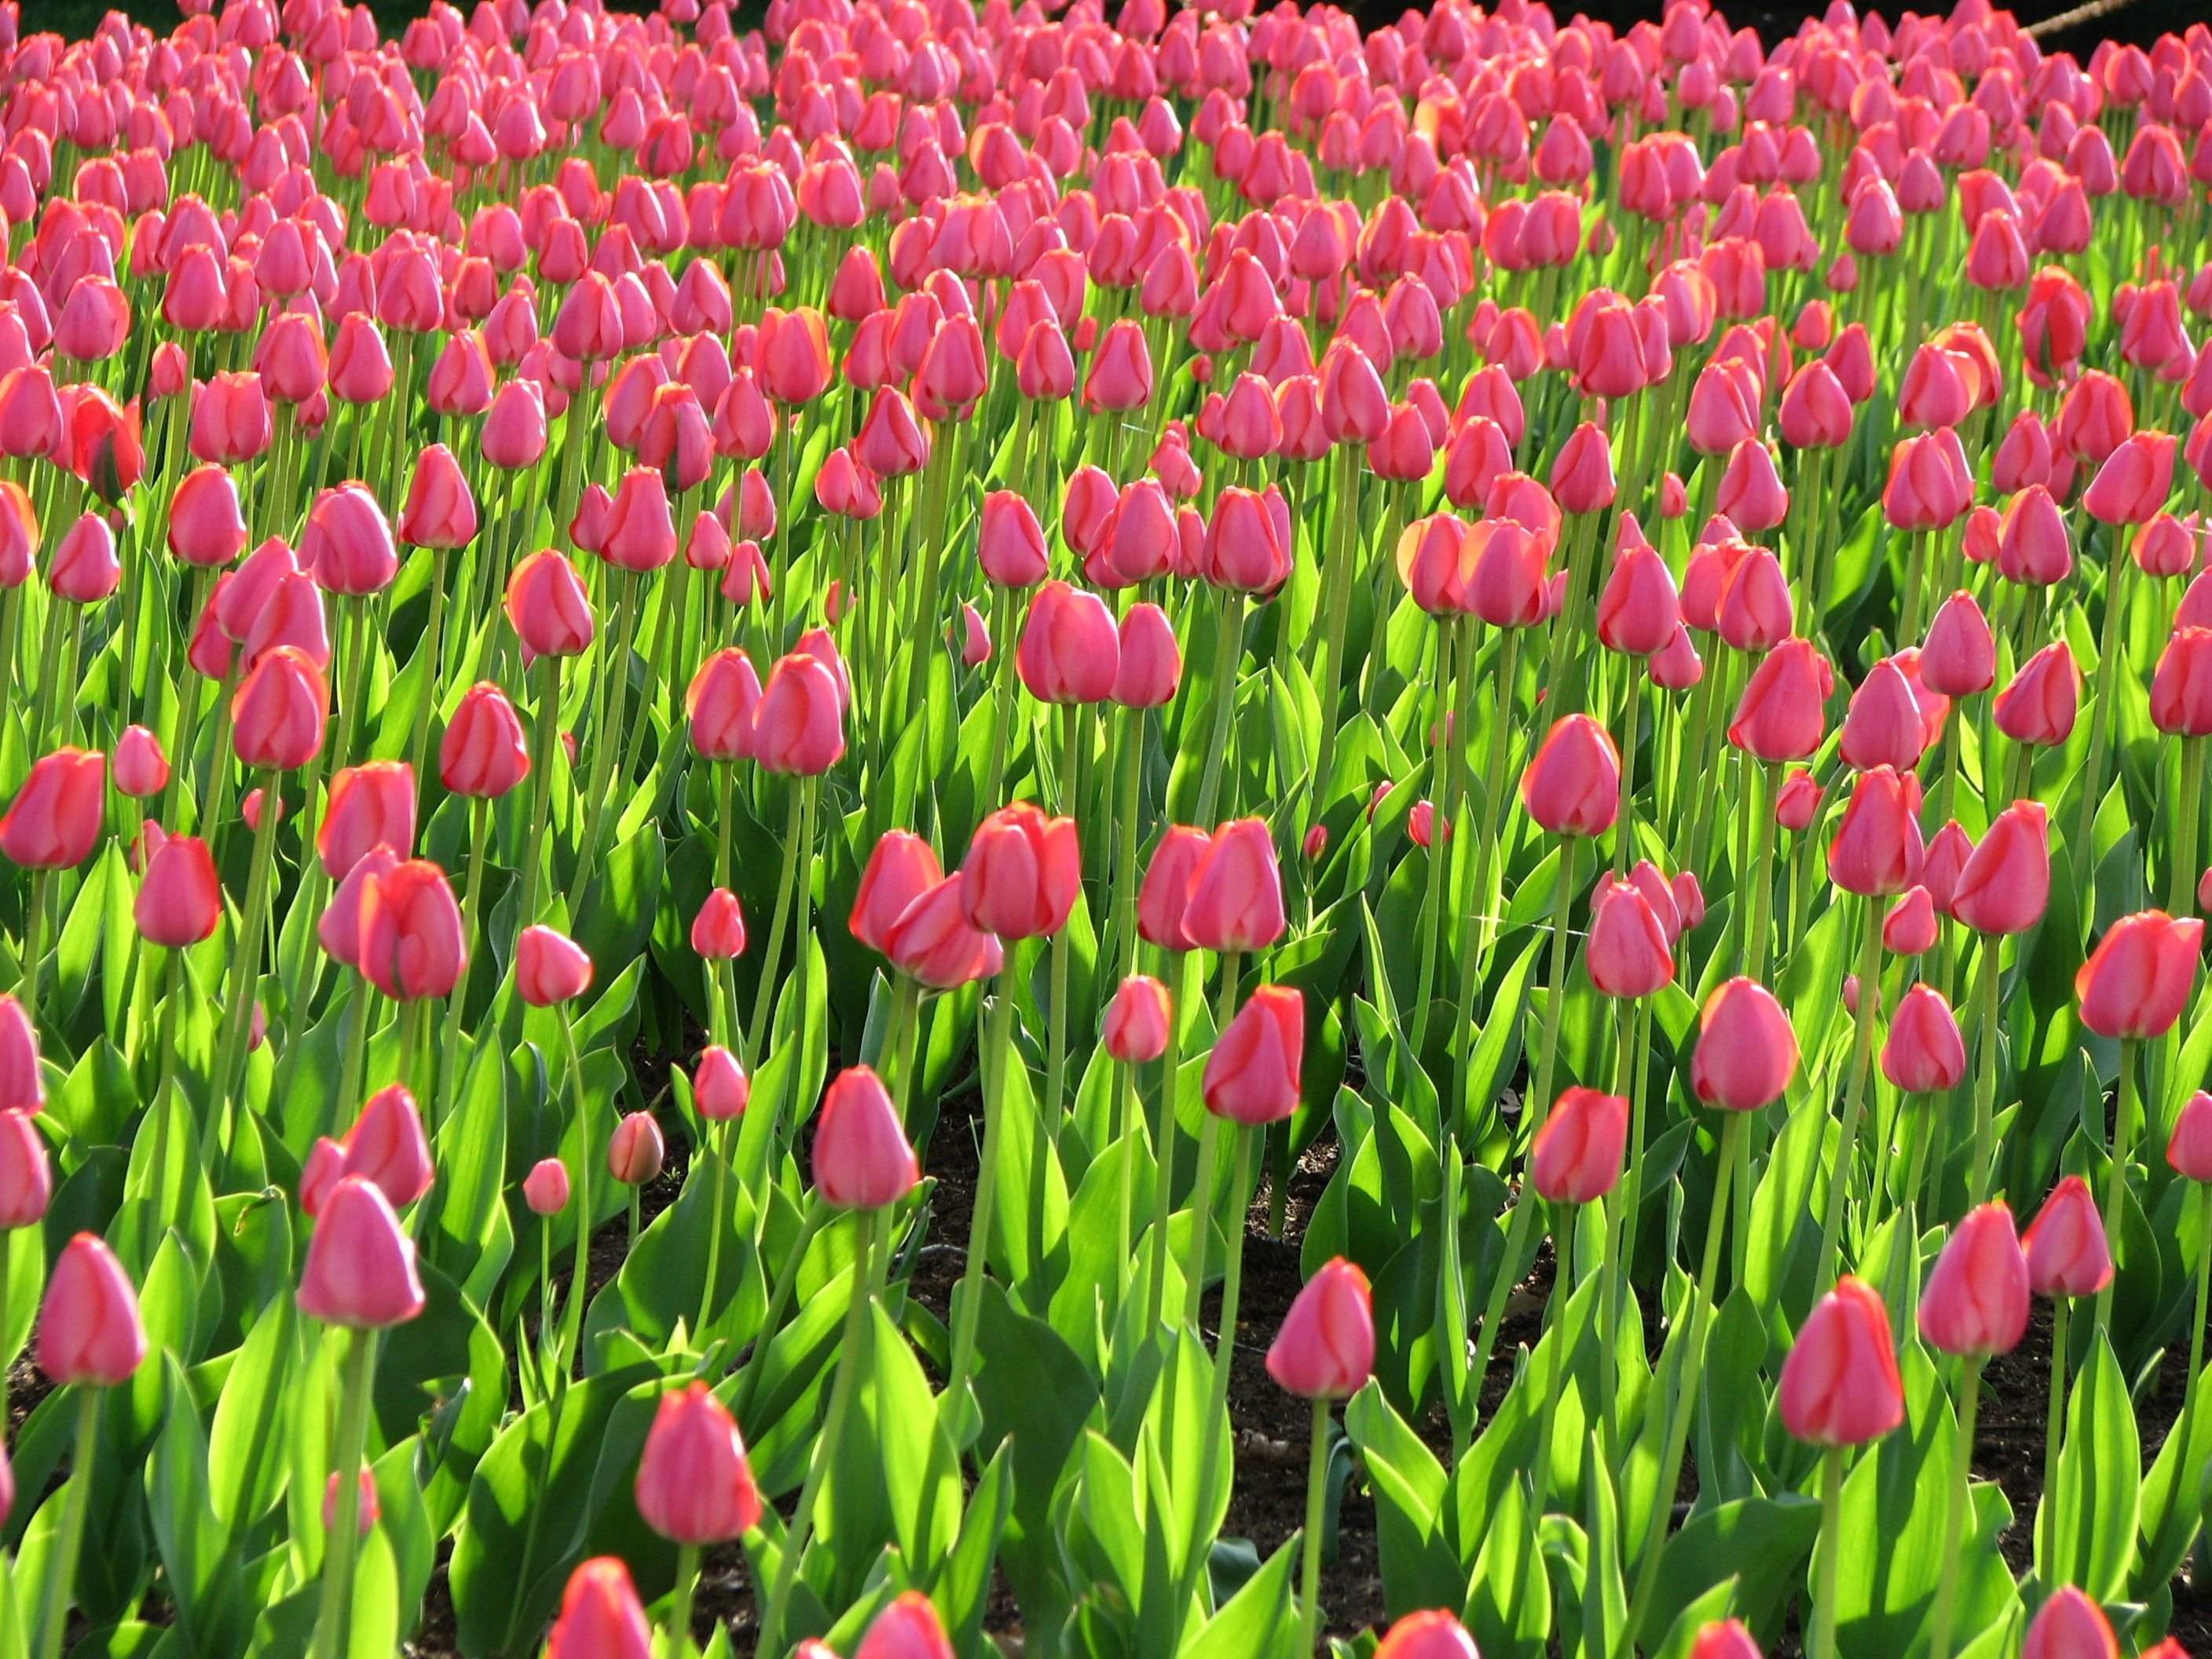 Tulip Fields Tulips Field Flower Flowers Wallpapers Hd Desktop